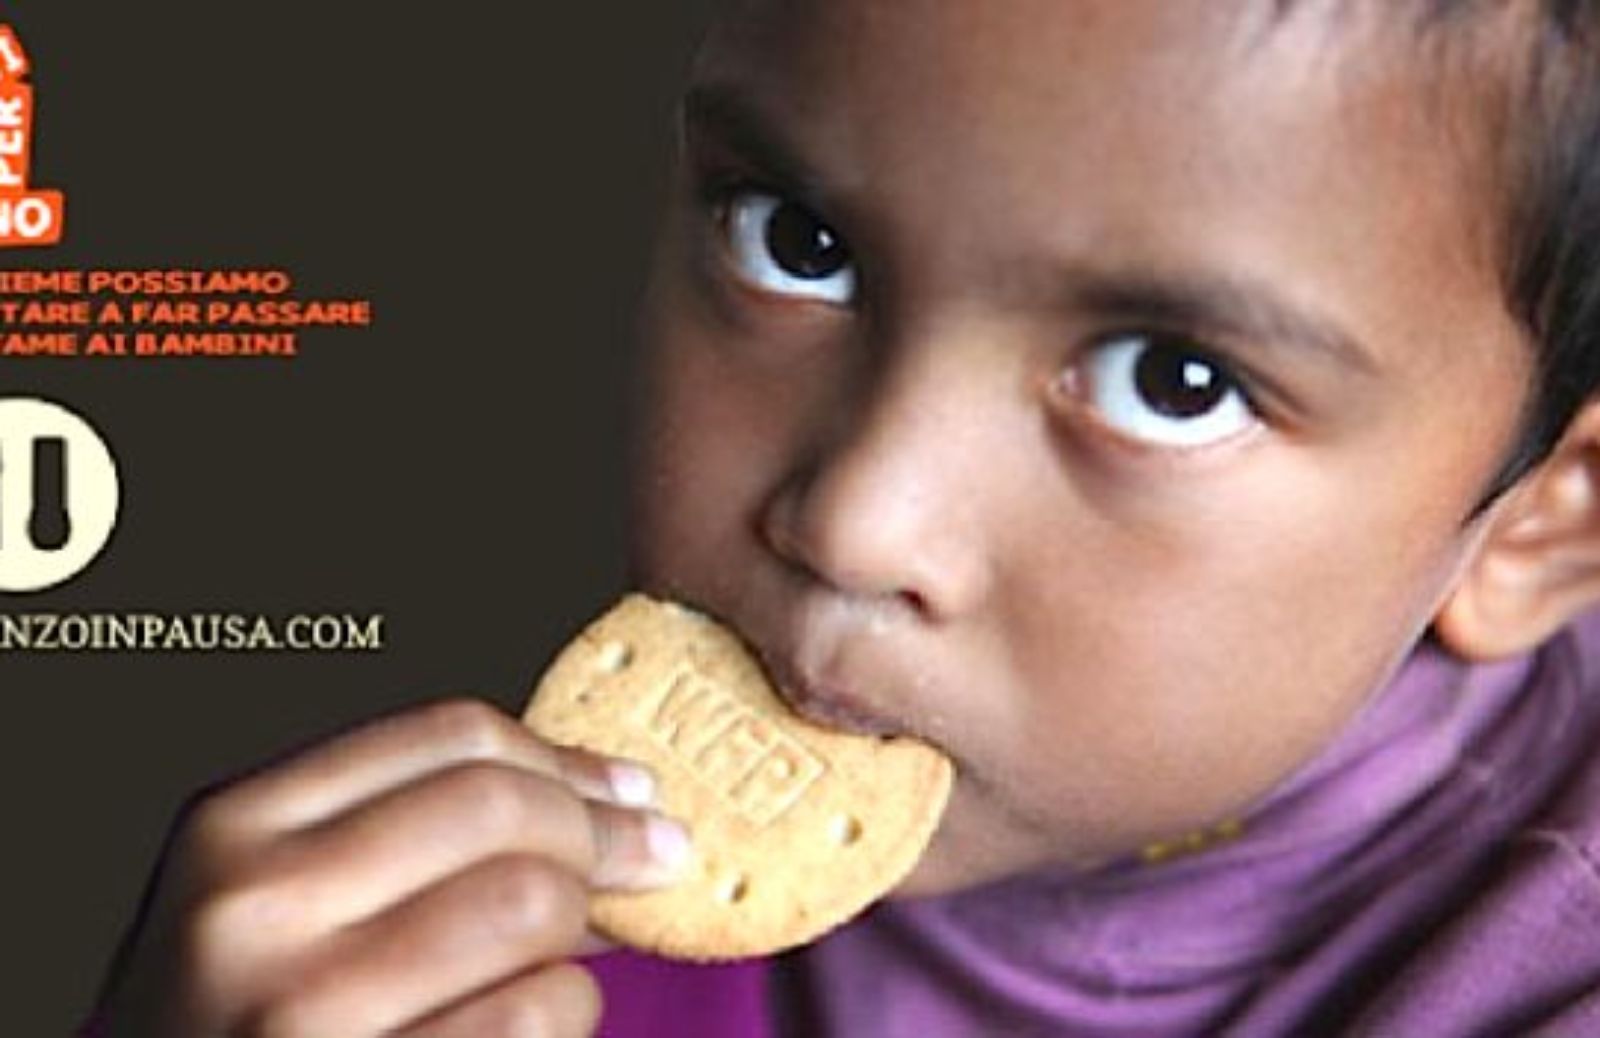 Come regalare un pranzo ai bambini meno fortunati: l'iniziativa Pranzo in pausa